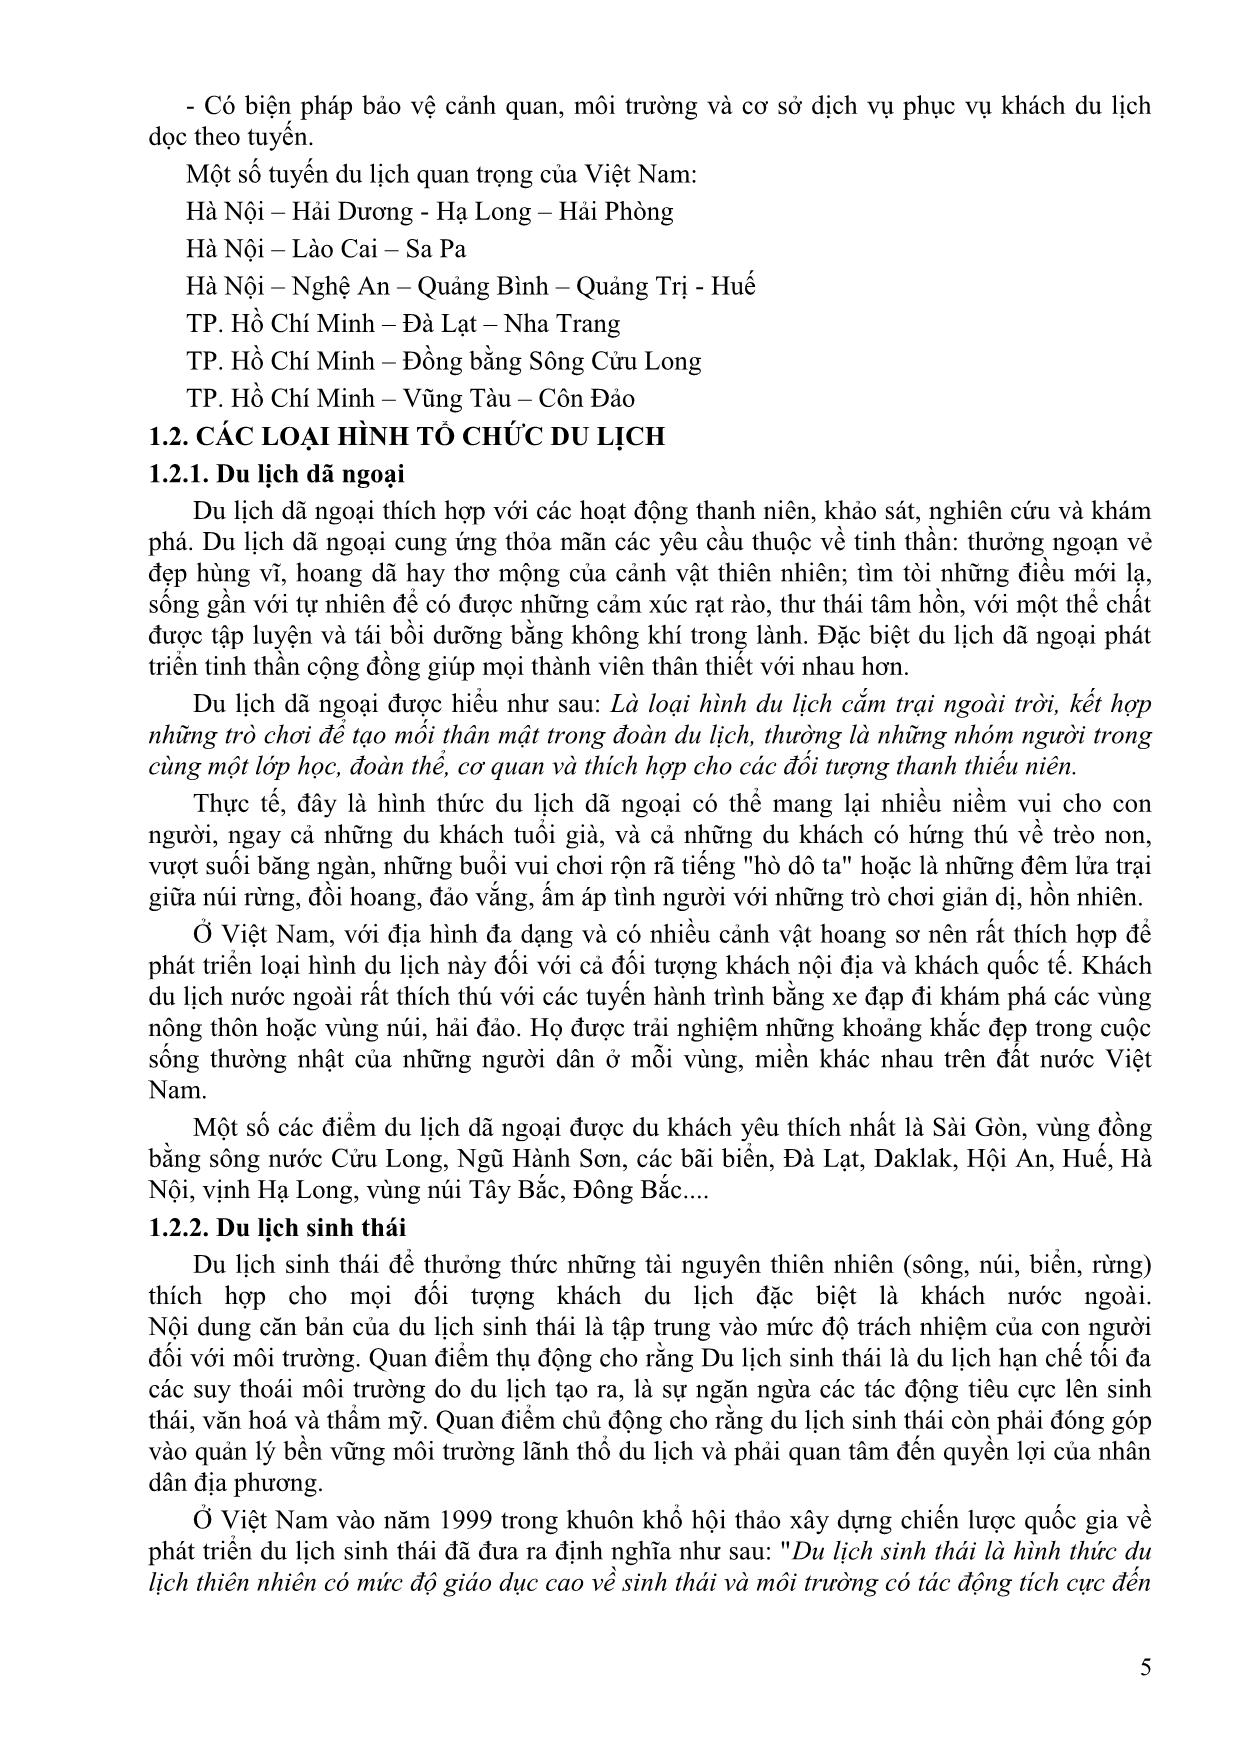 Bài giảng Tuyến điểm du lịch Việt Nam - Đồng Thị Thu Huyền trang 5